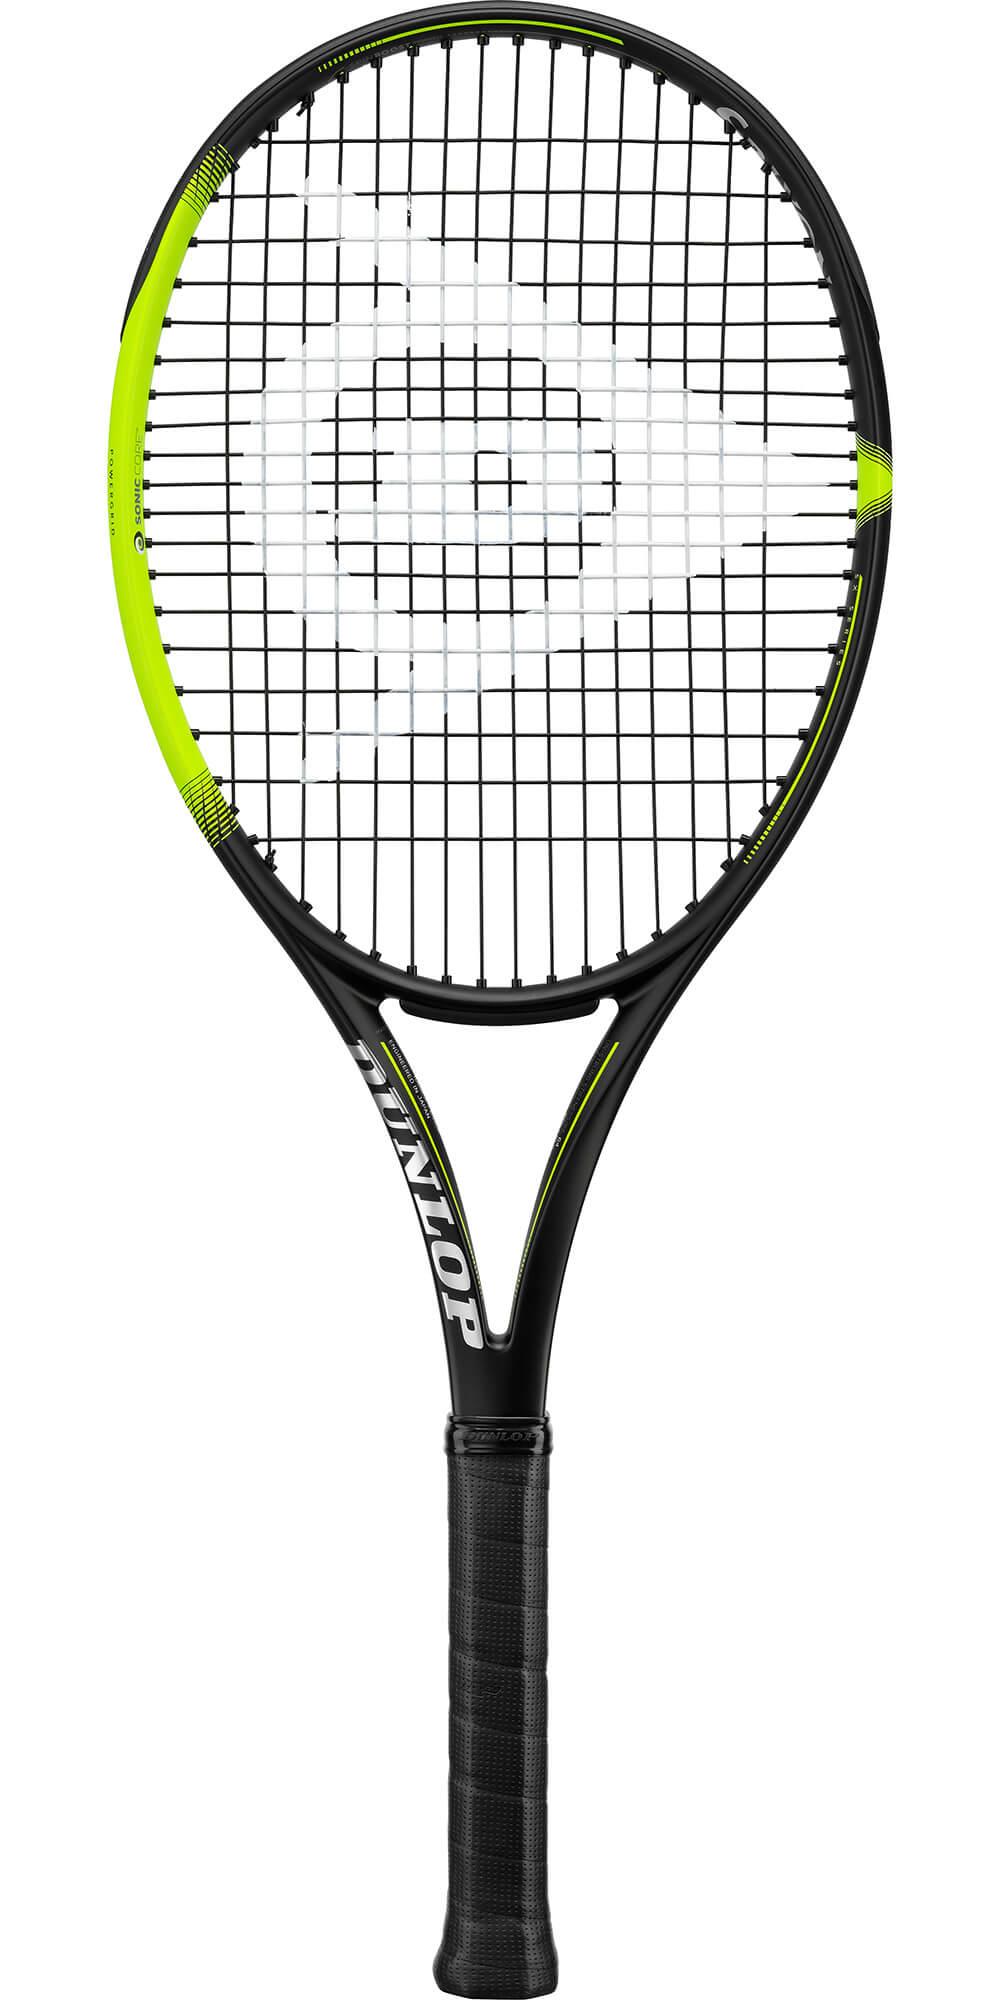 TF SX300 Tour G2 Tennis Racket